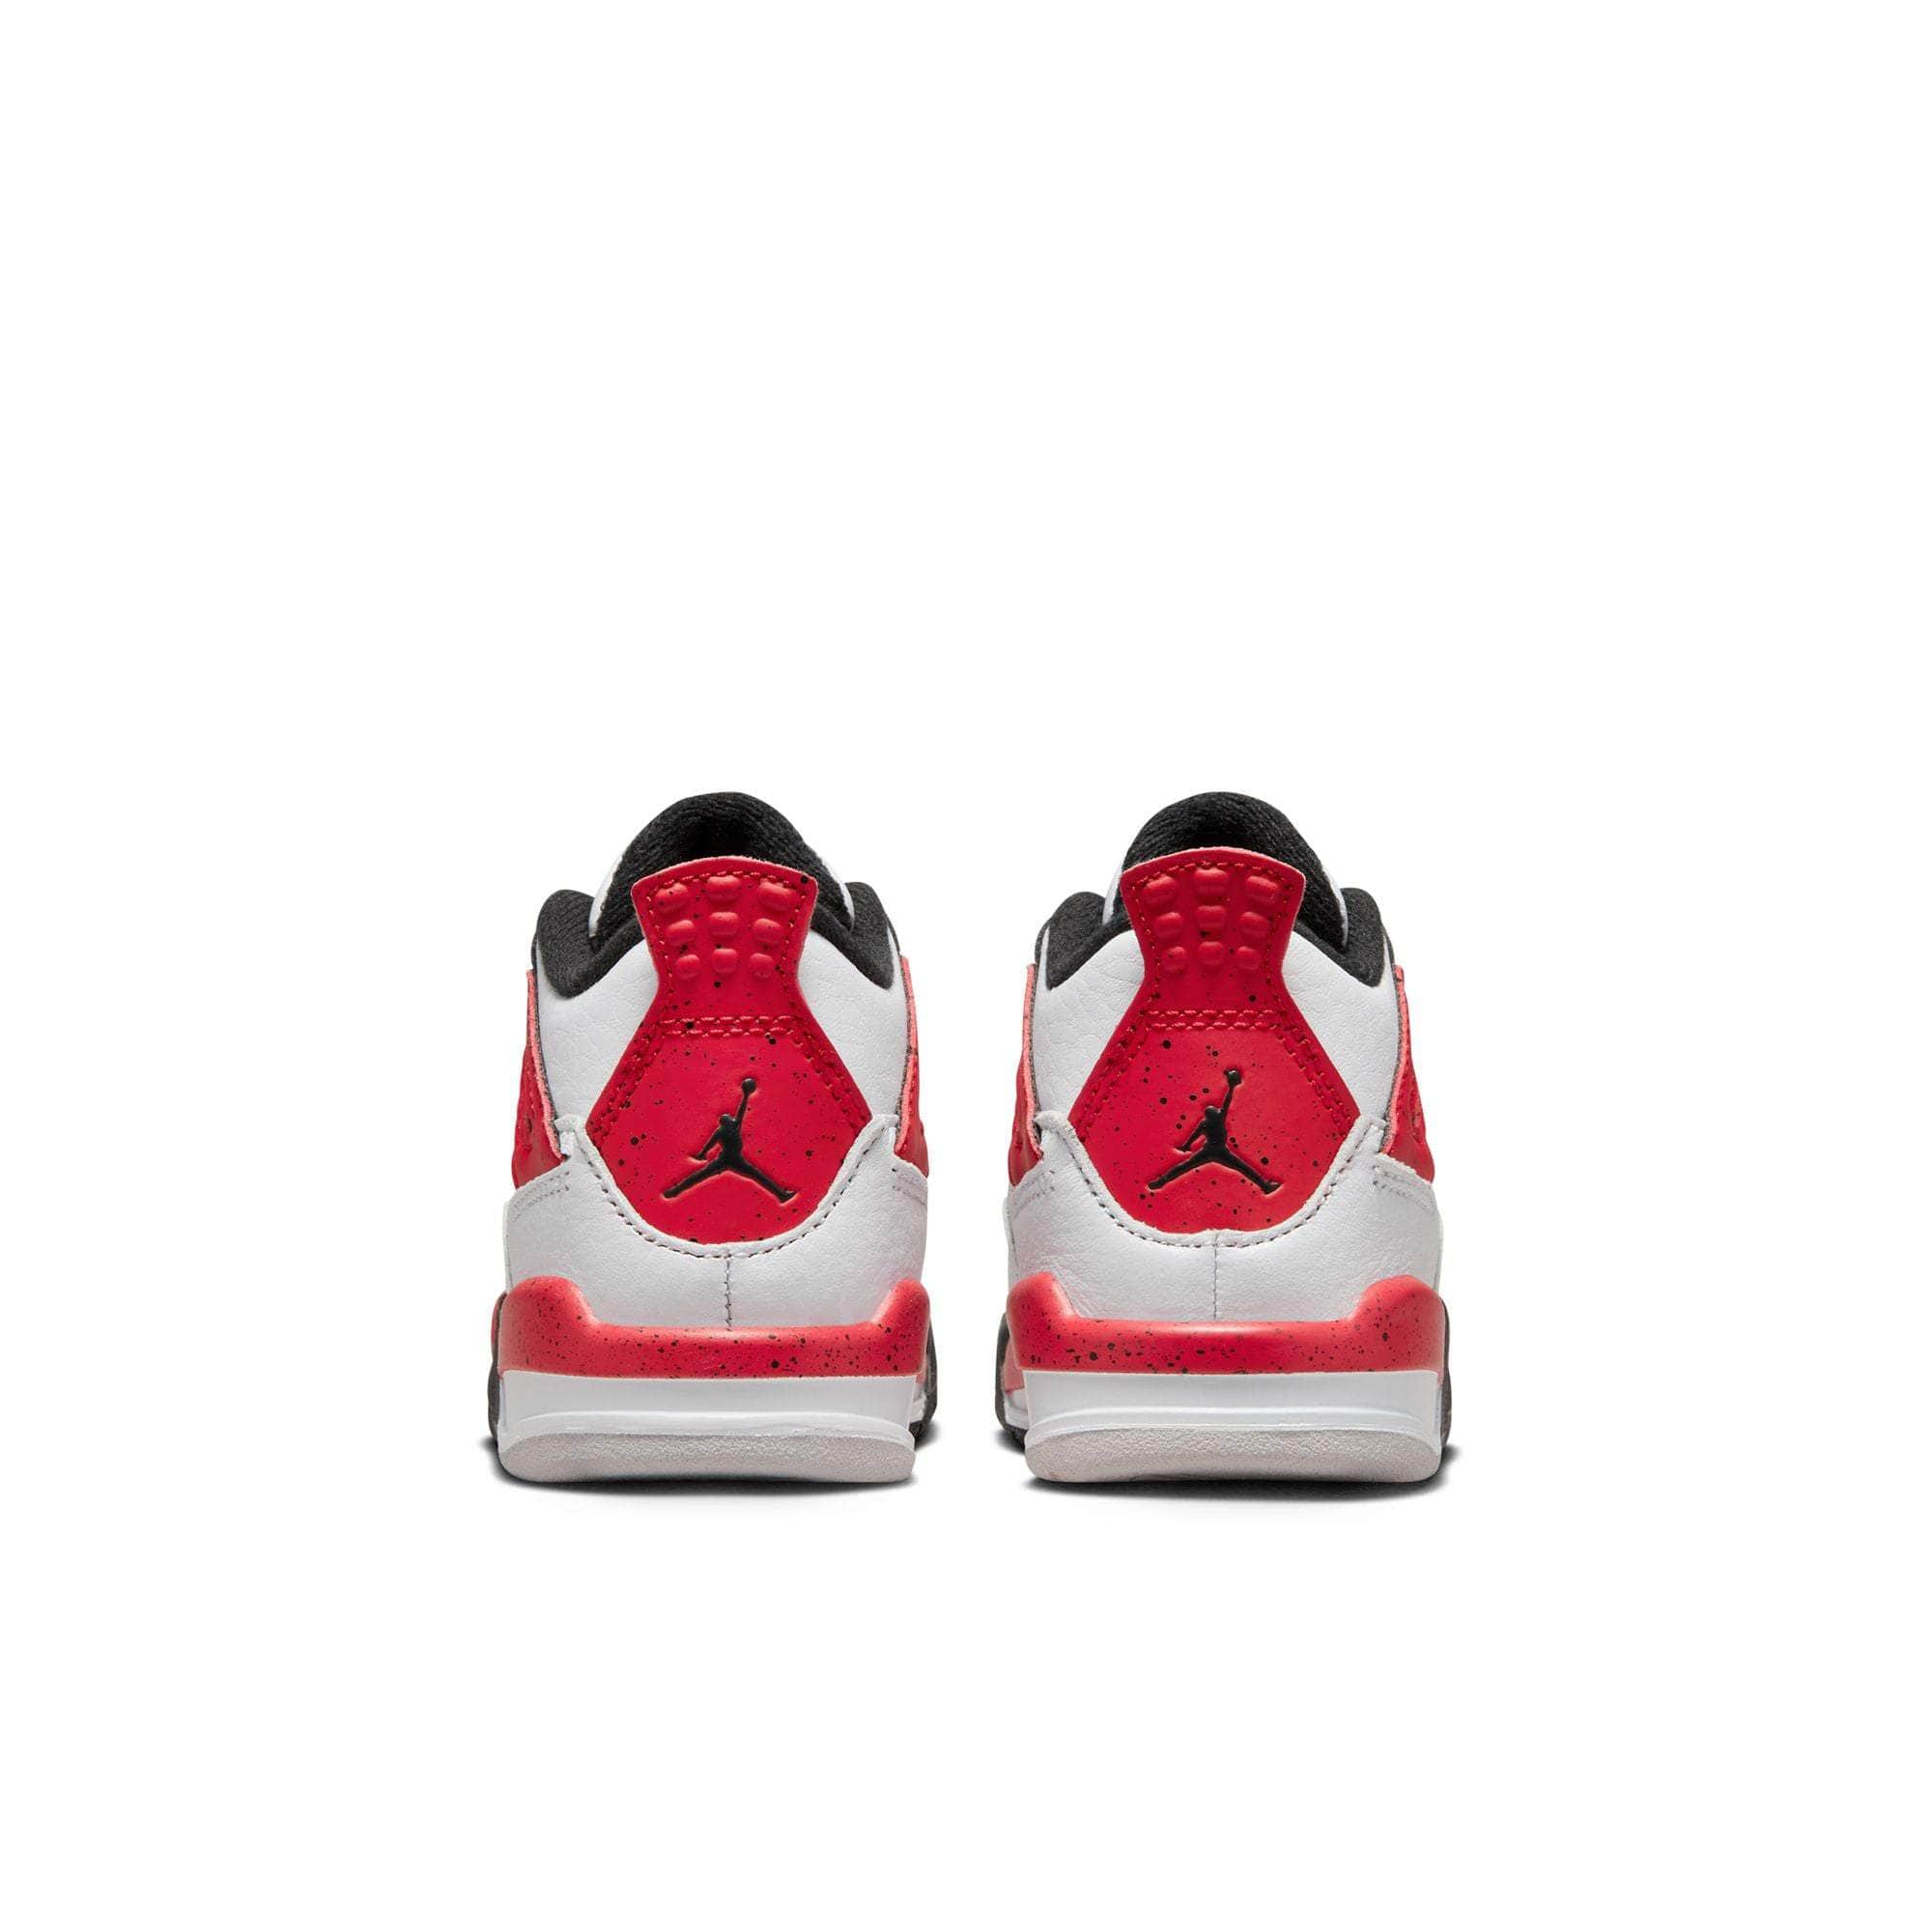 Air Jordan 4 Retro 